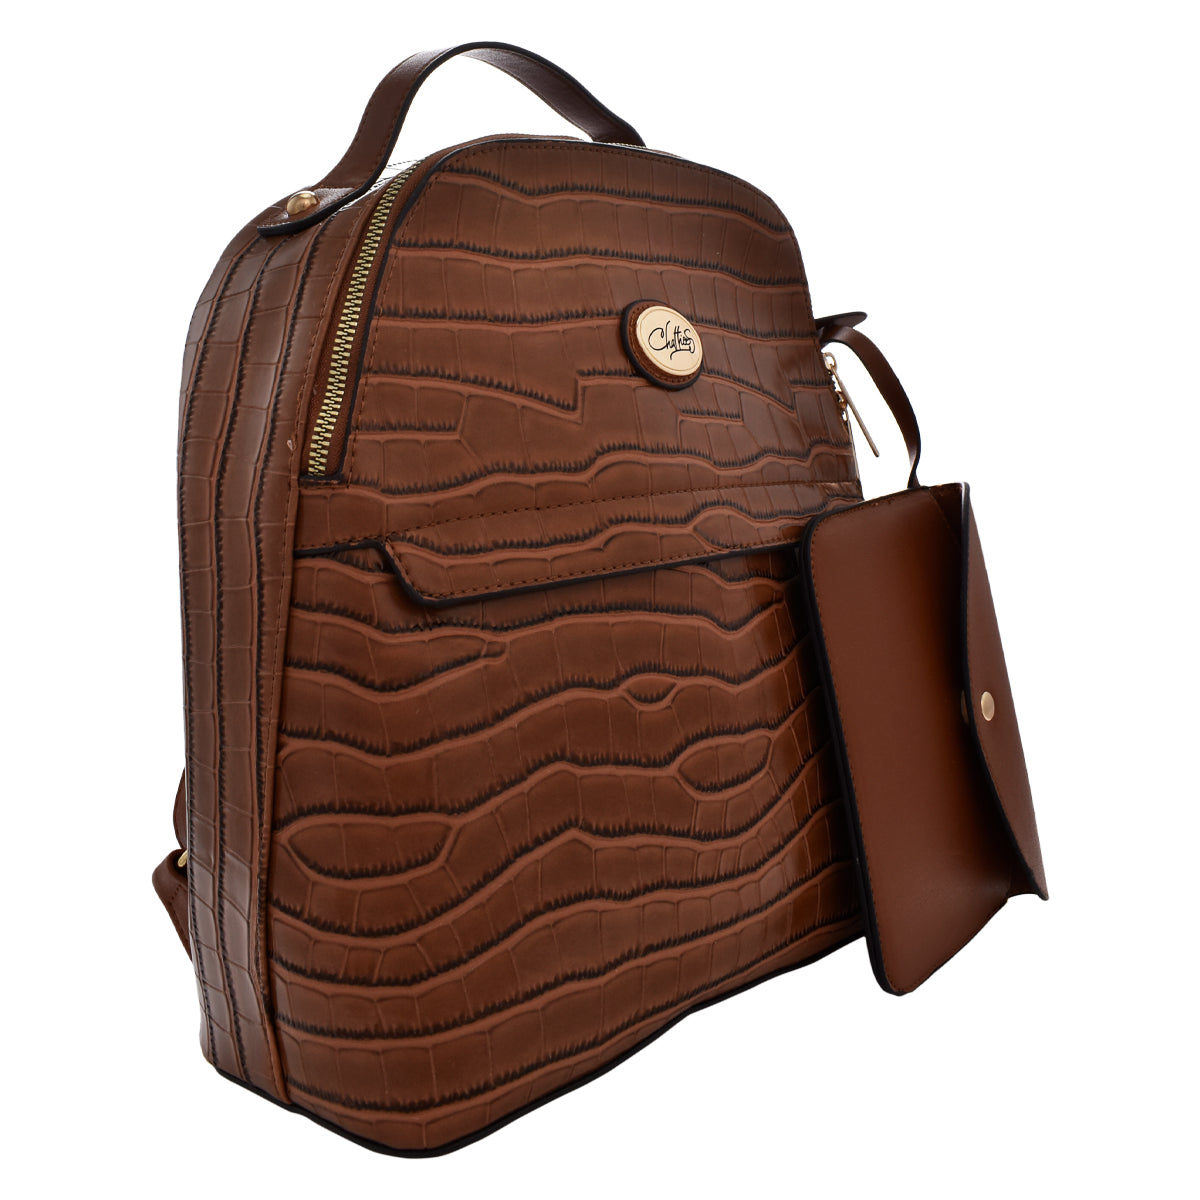 Backpack [Chatties] con diseño estilo animal print tipo piel de cocodr –  Bag City Mexico